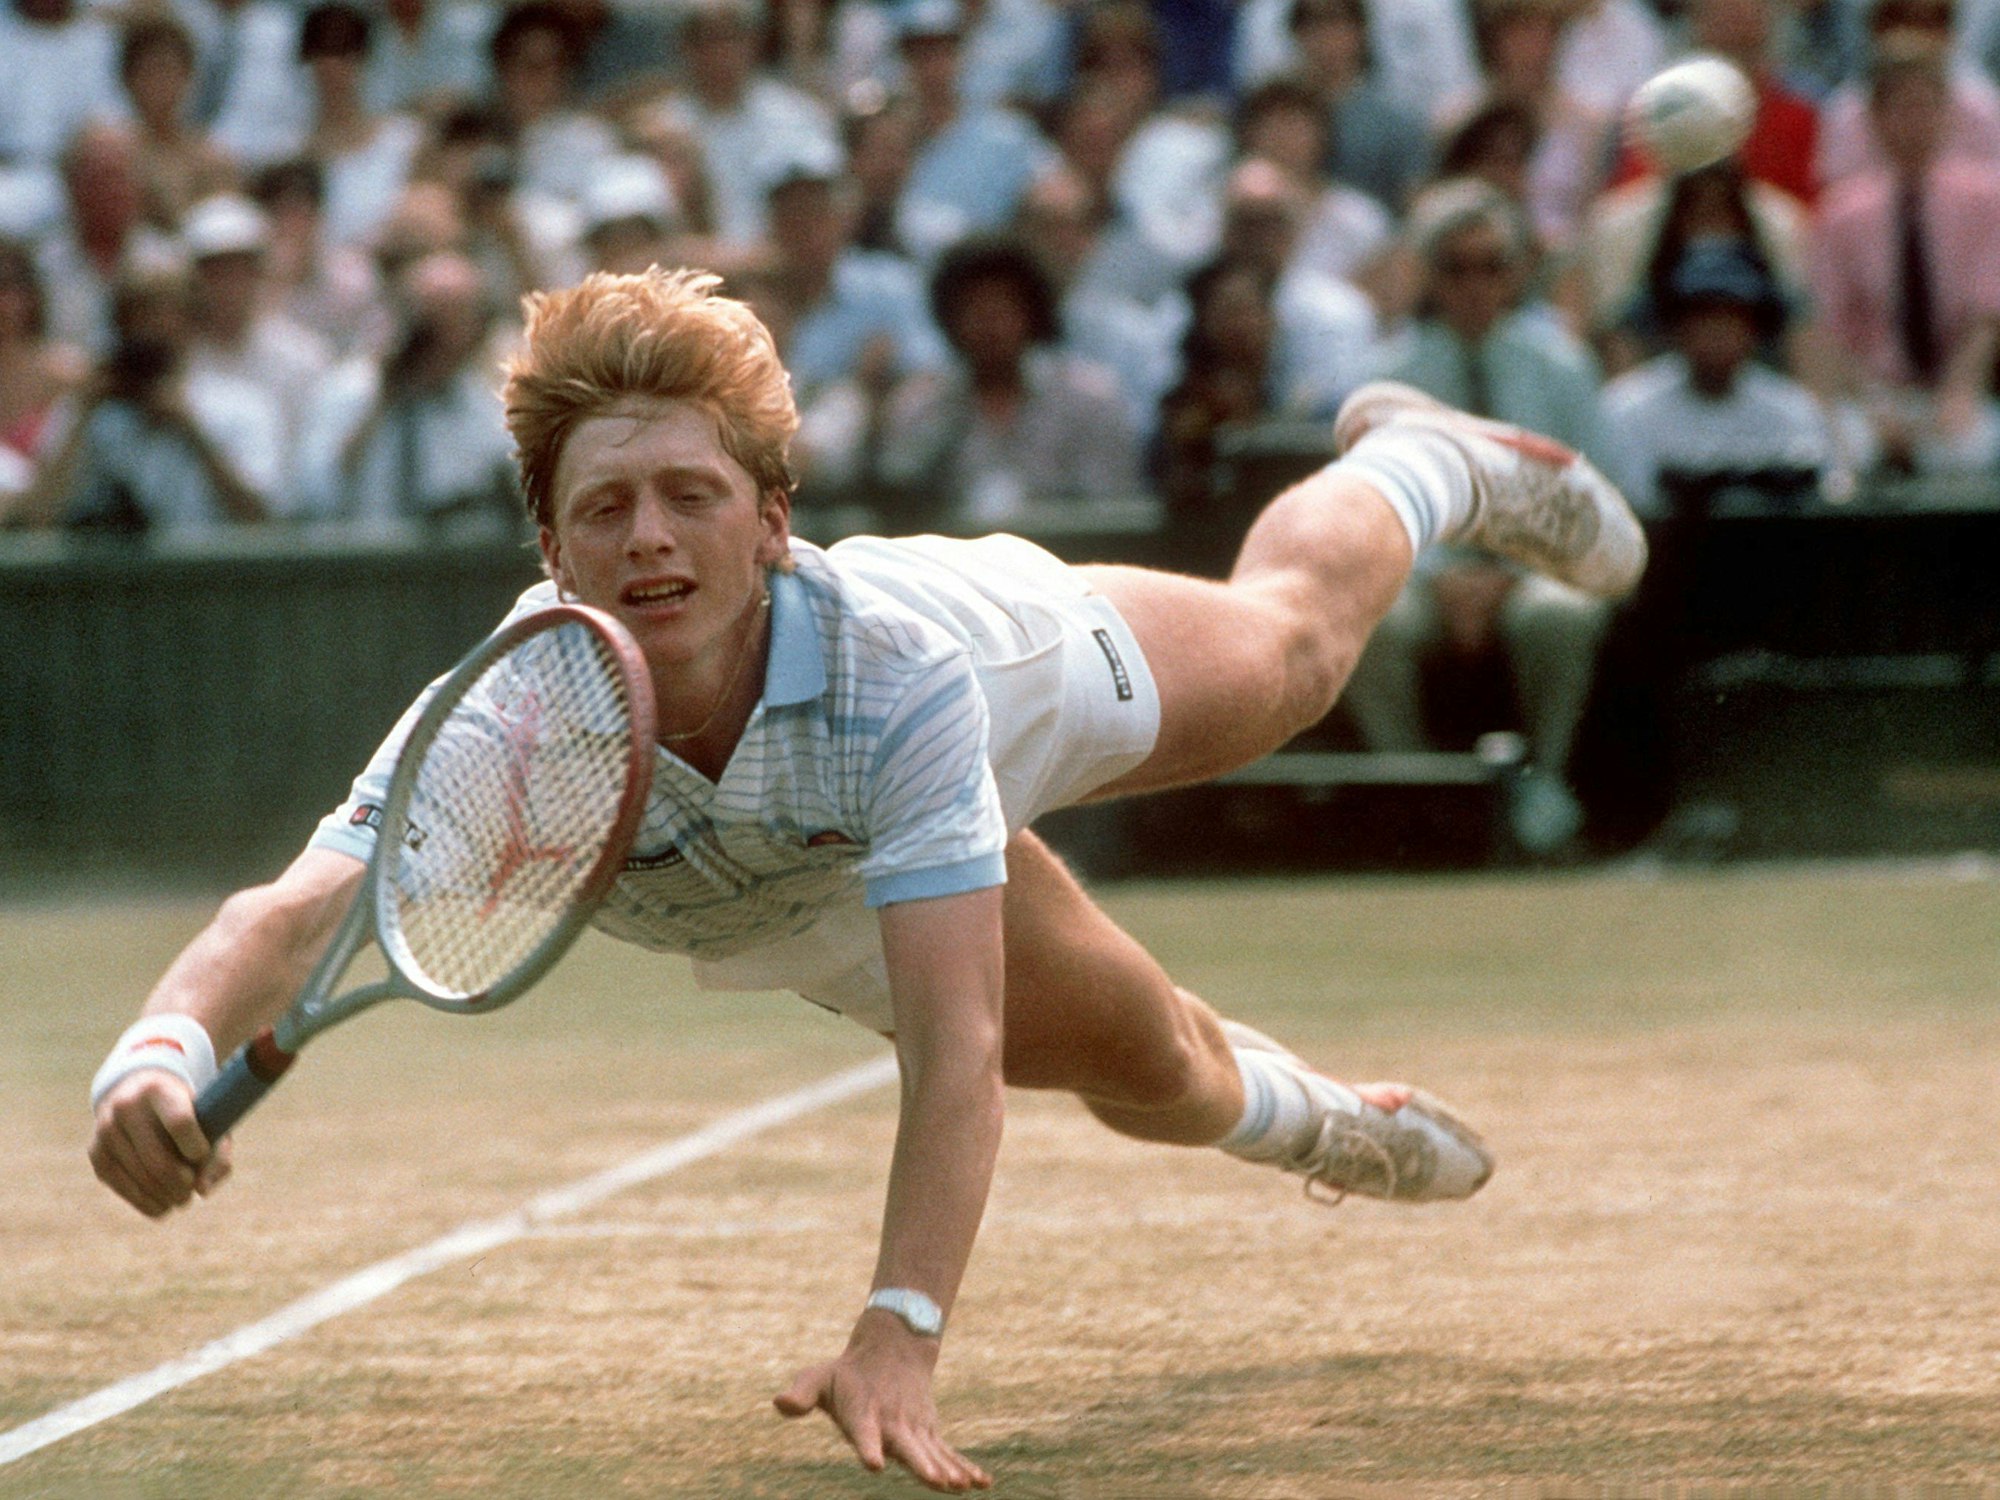 Wimbledon am 7. Juli 1985: Der damals 17-jährige Boris Becker hechtet hinter einem Ball her und besiegt Kevin Curren am Ende mit 6:3, 6:7, 7:6, 6:4. Er ist der jüngste Wimbledon-Sieger in der Geschichte des Turniers.